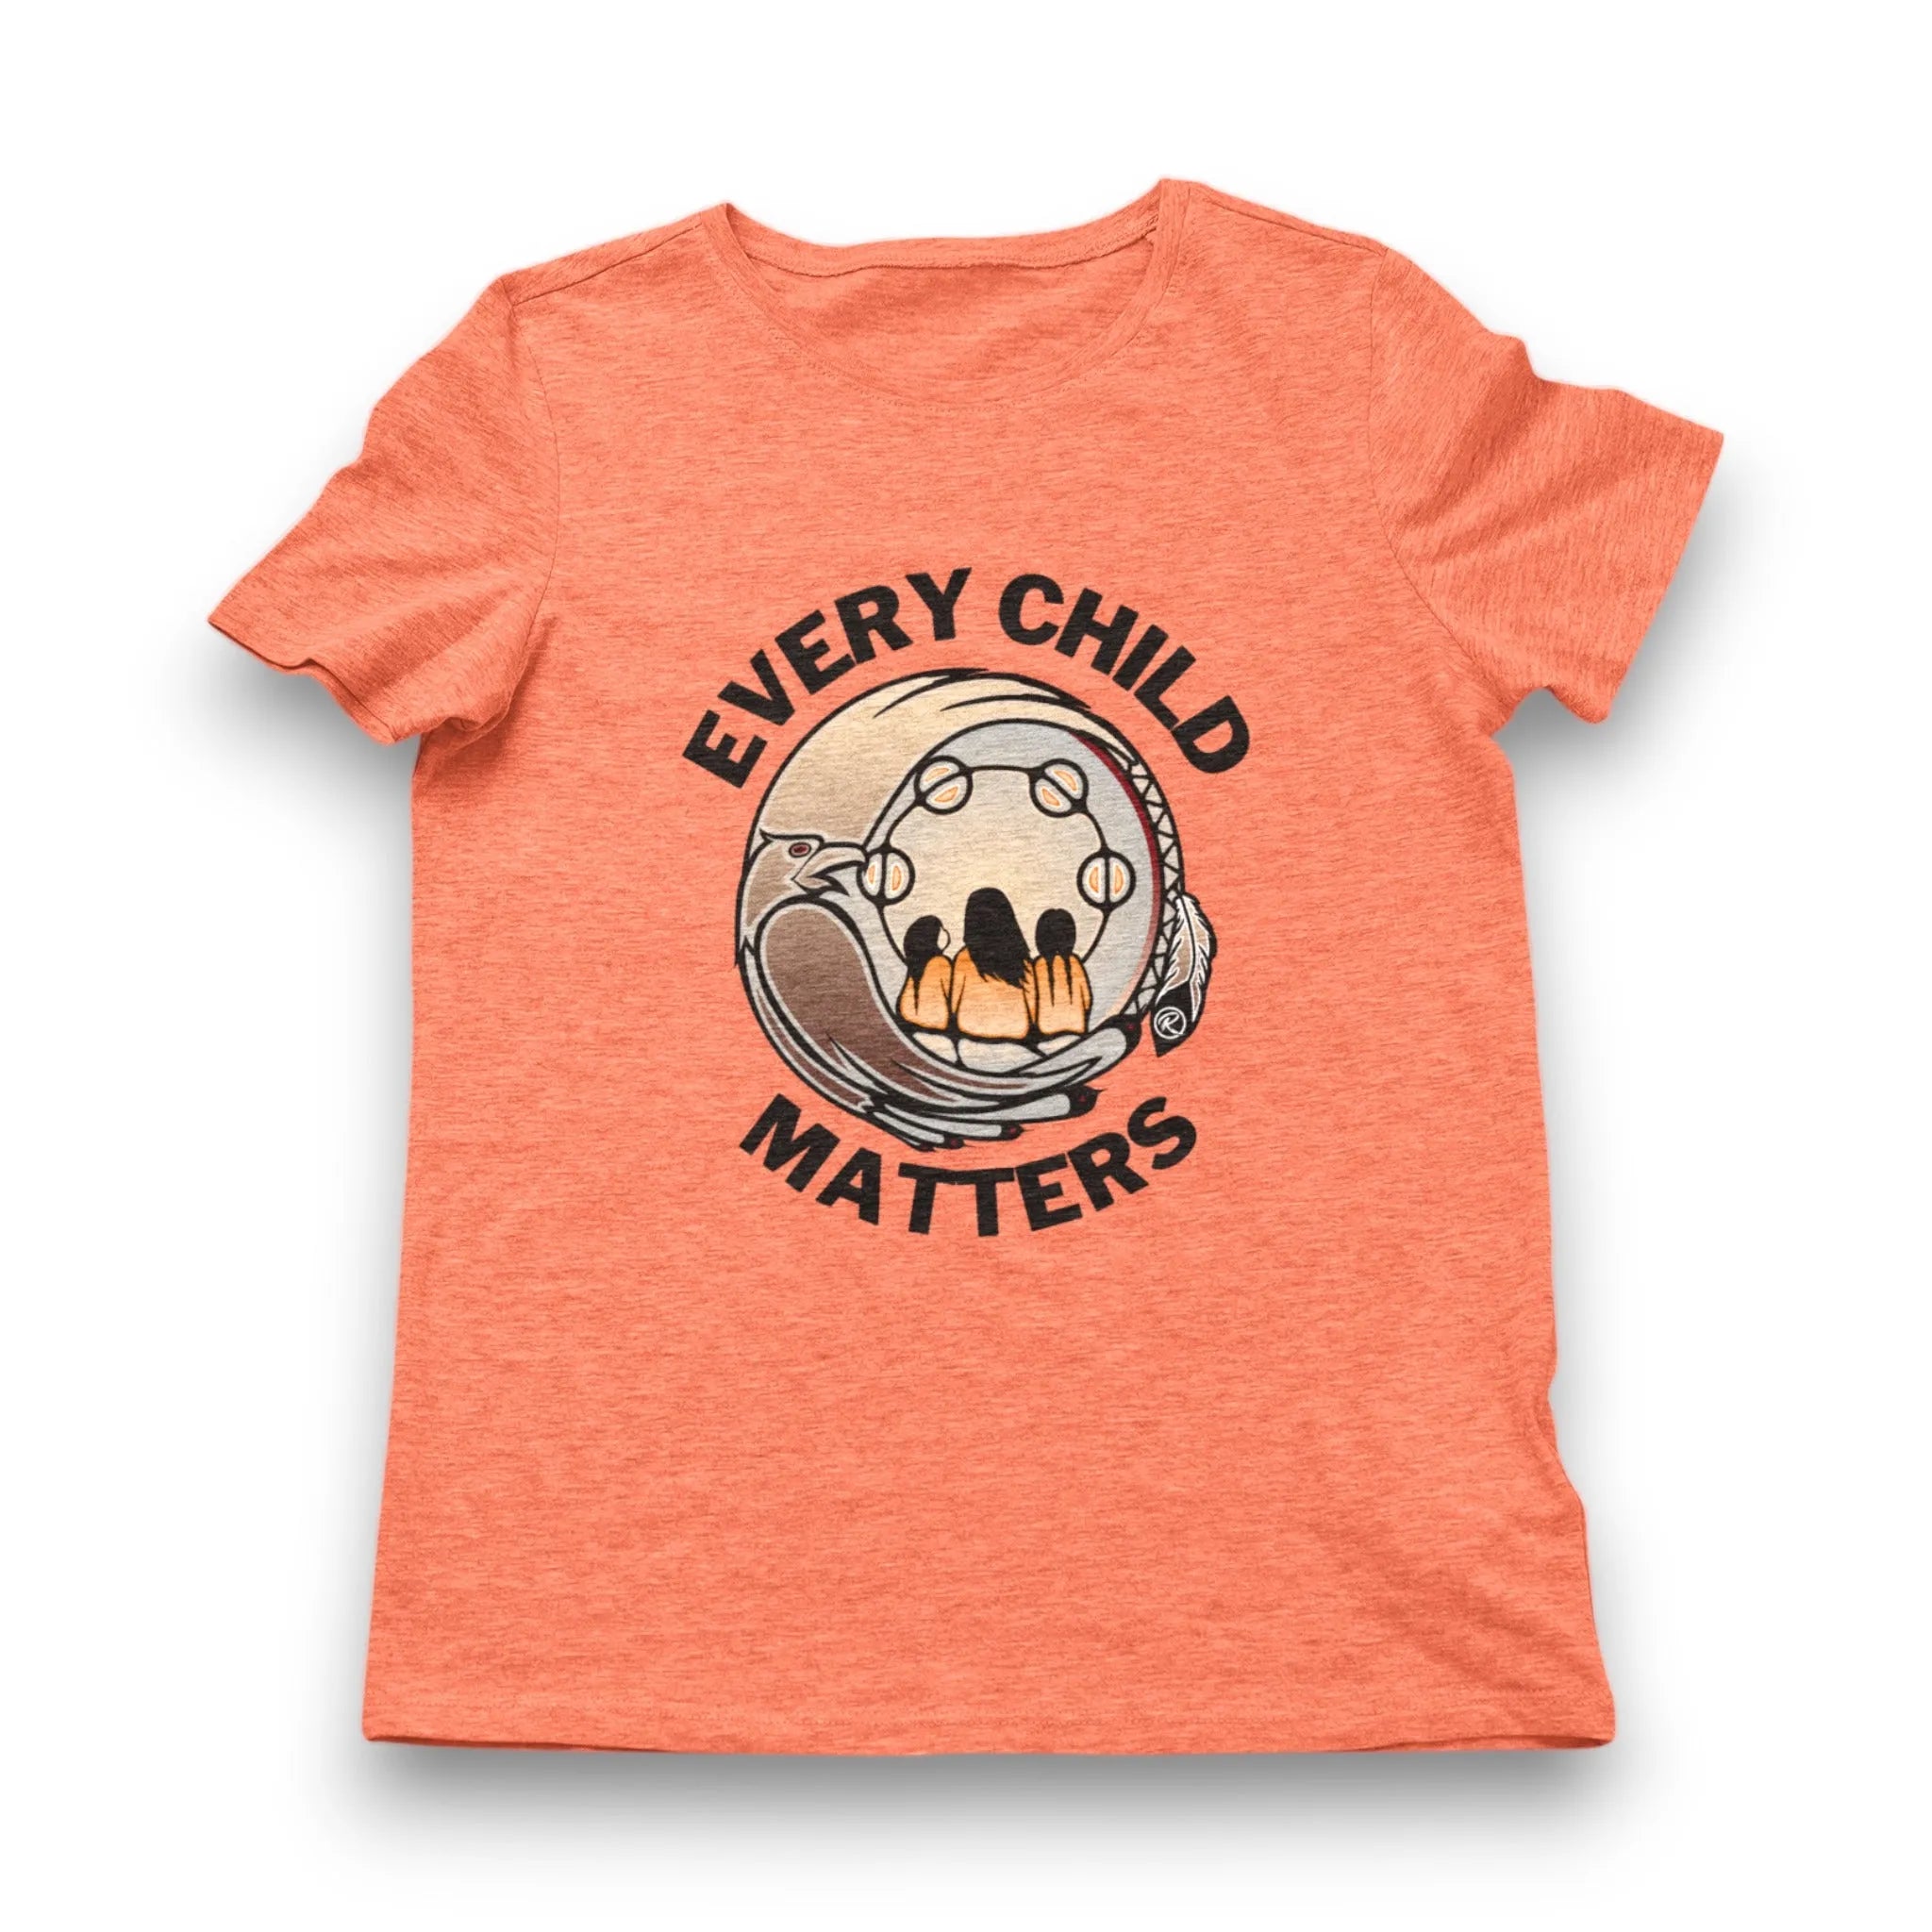 Every Child Matters 'Binesi' T-shirt